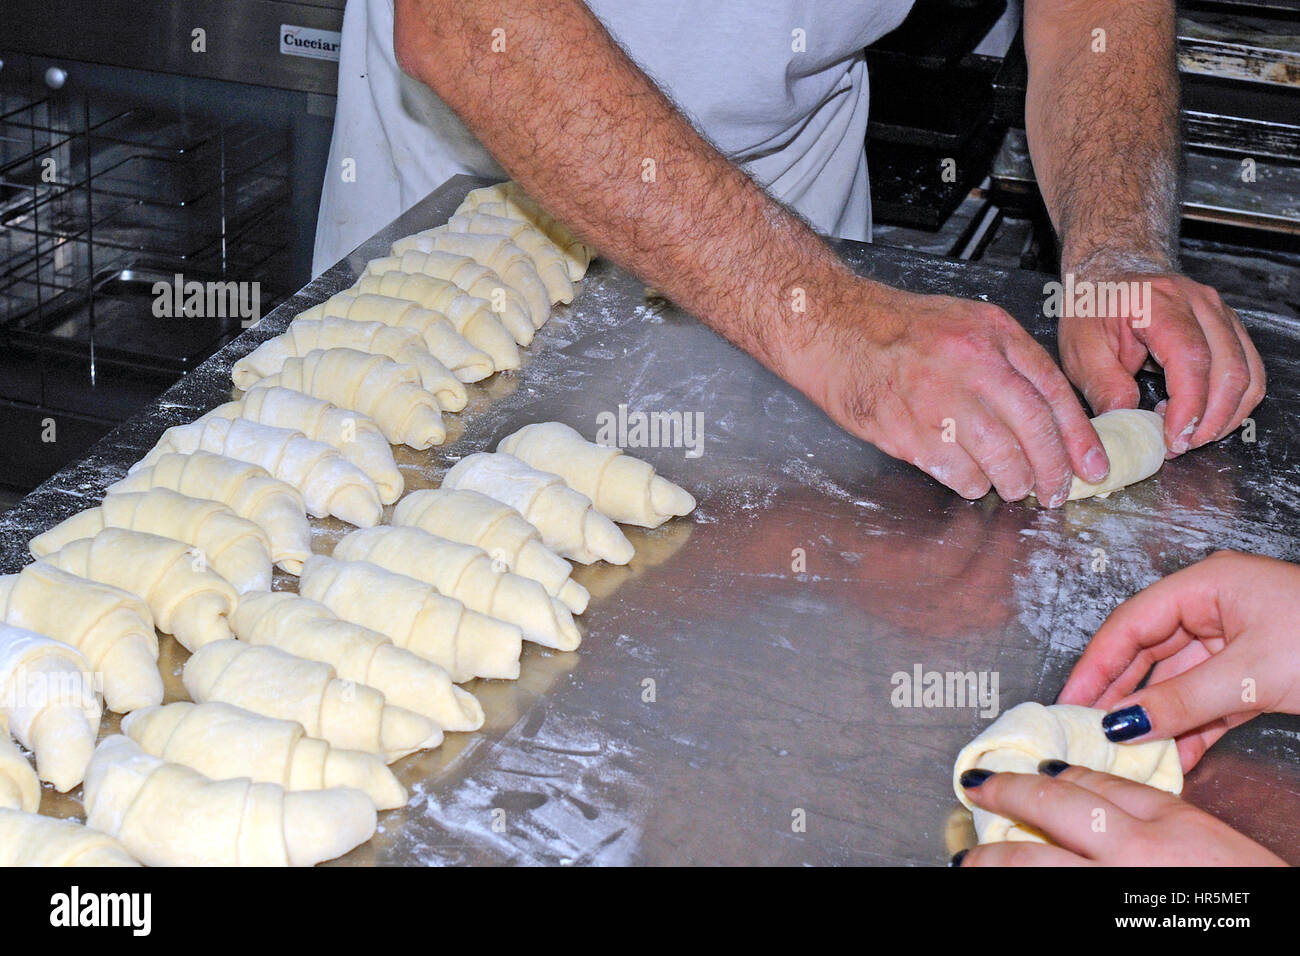 Un boulanger de travailler sur une surface farinée, rouler la pâte en carrés de formes croissant avant la cuisson Banque D'Images